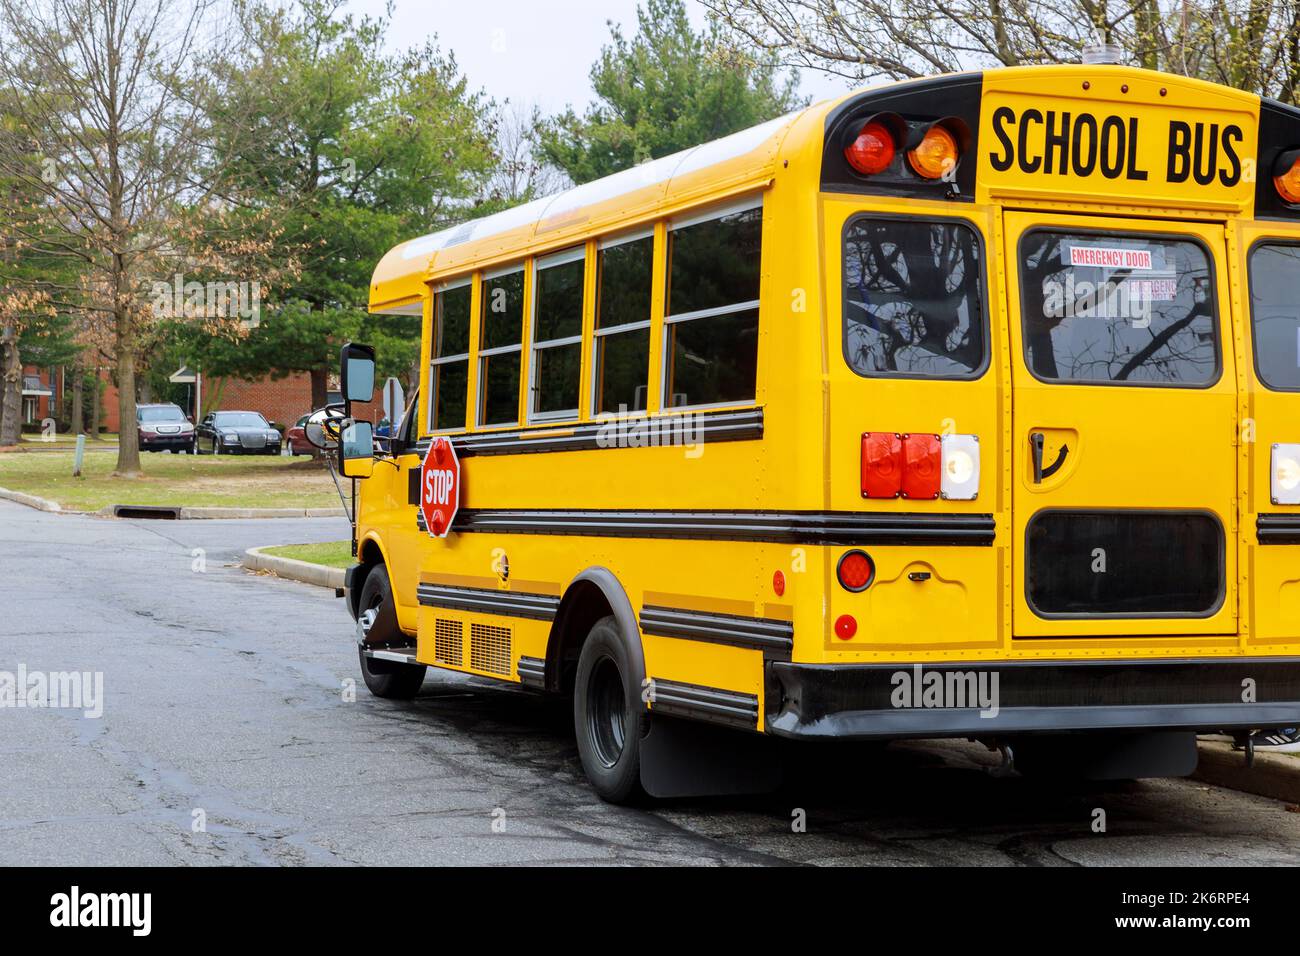 Tradizionalmente, gli autobus scolastici sono stati utilizzati quotidianamente per trasportare i bambini a scuola. Foto Stock